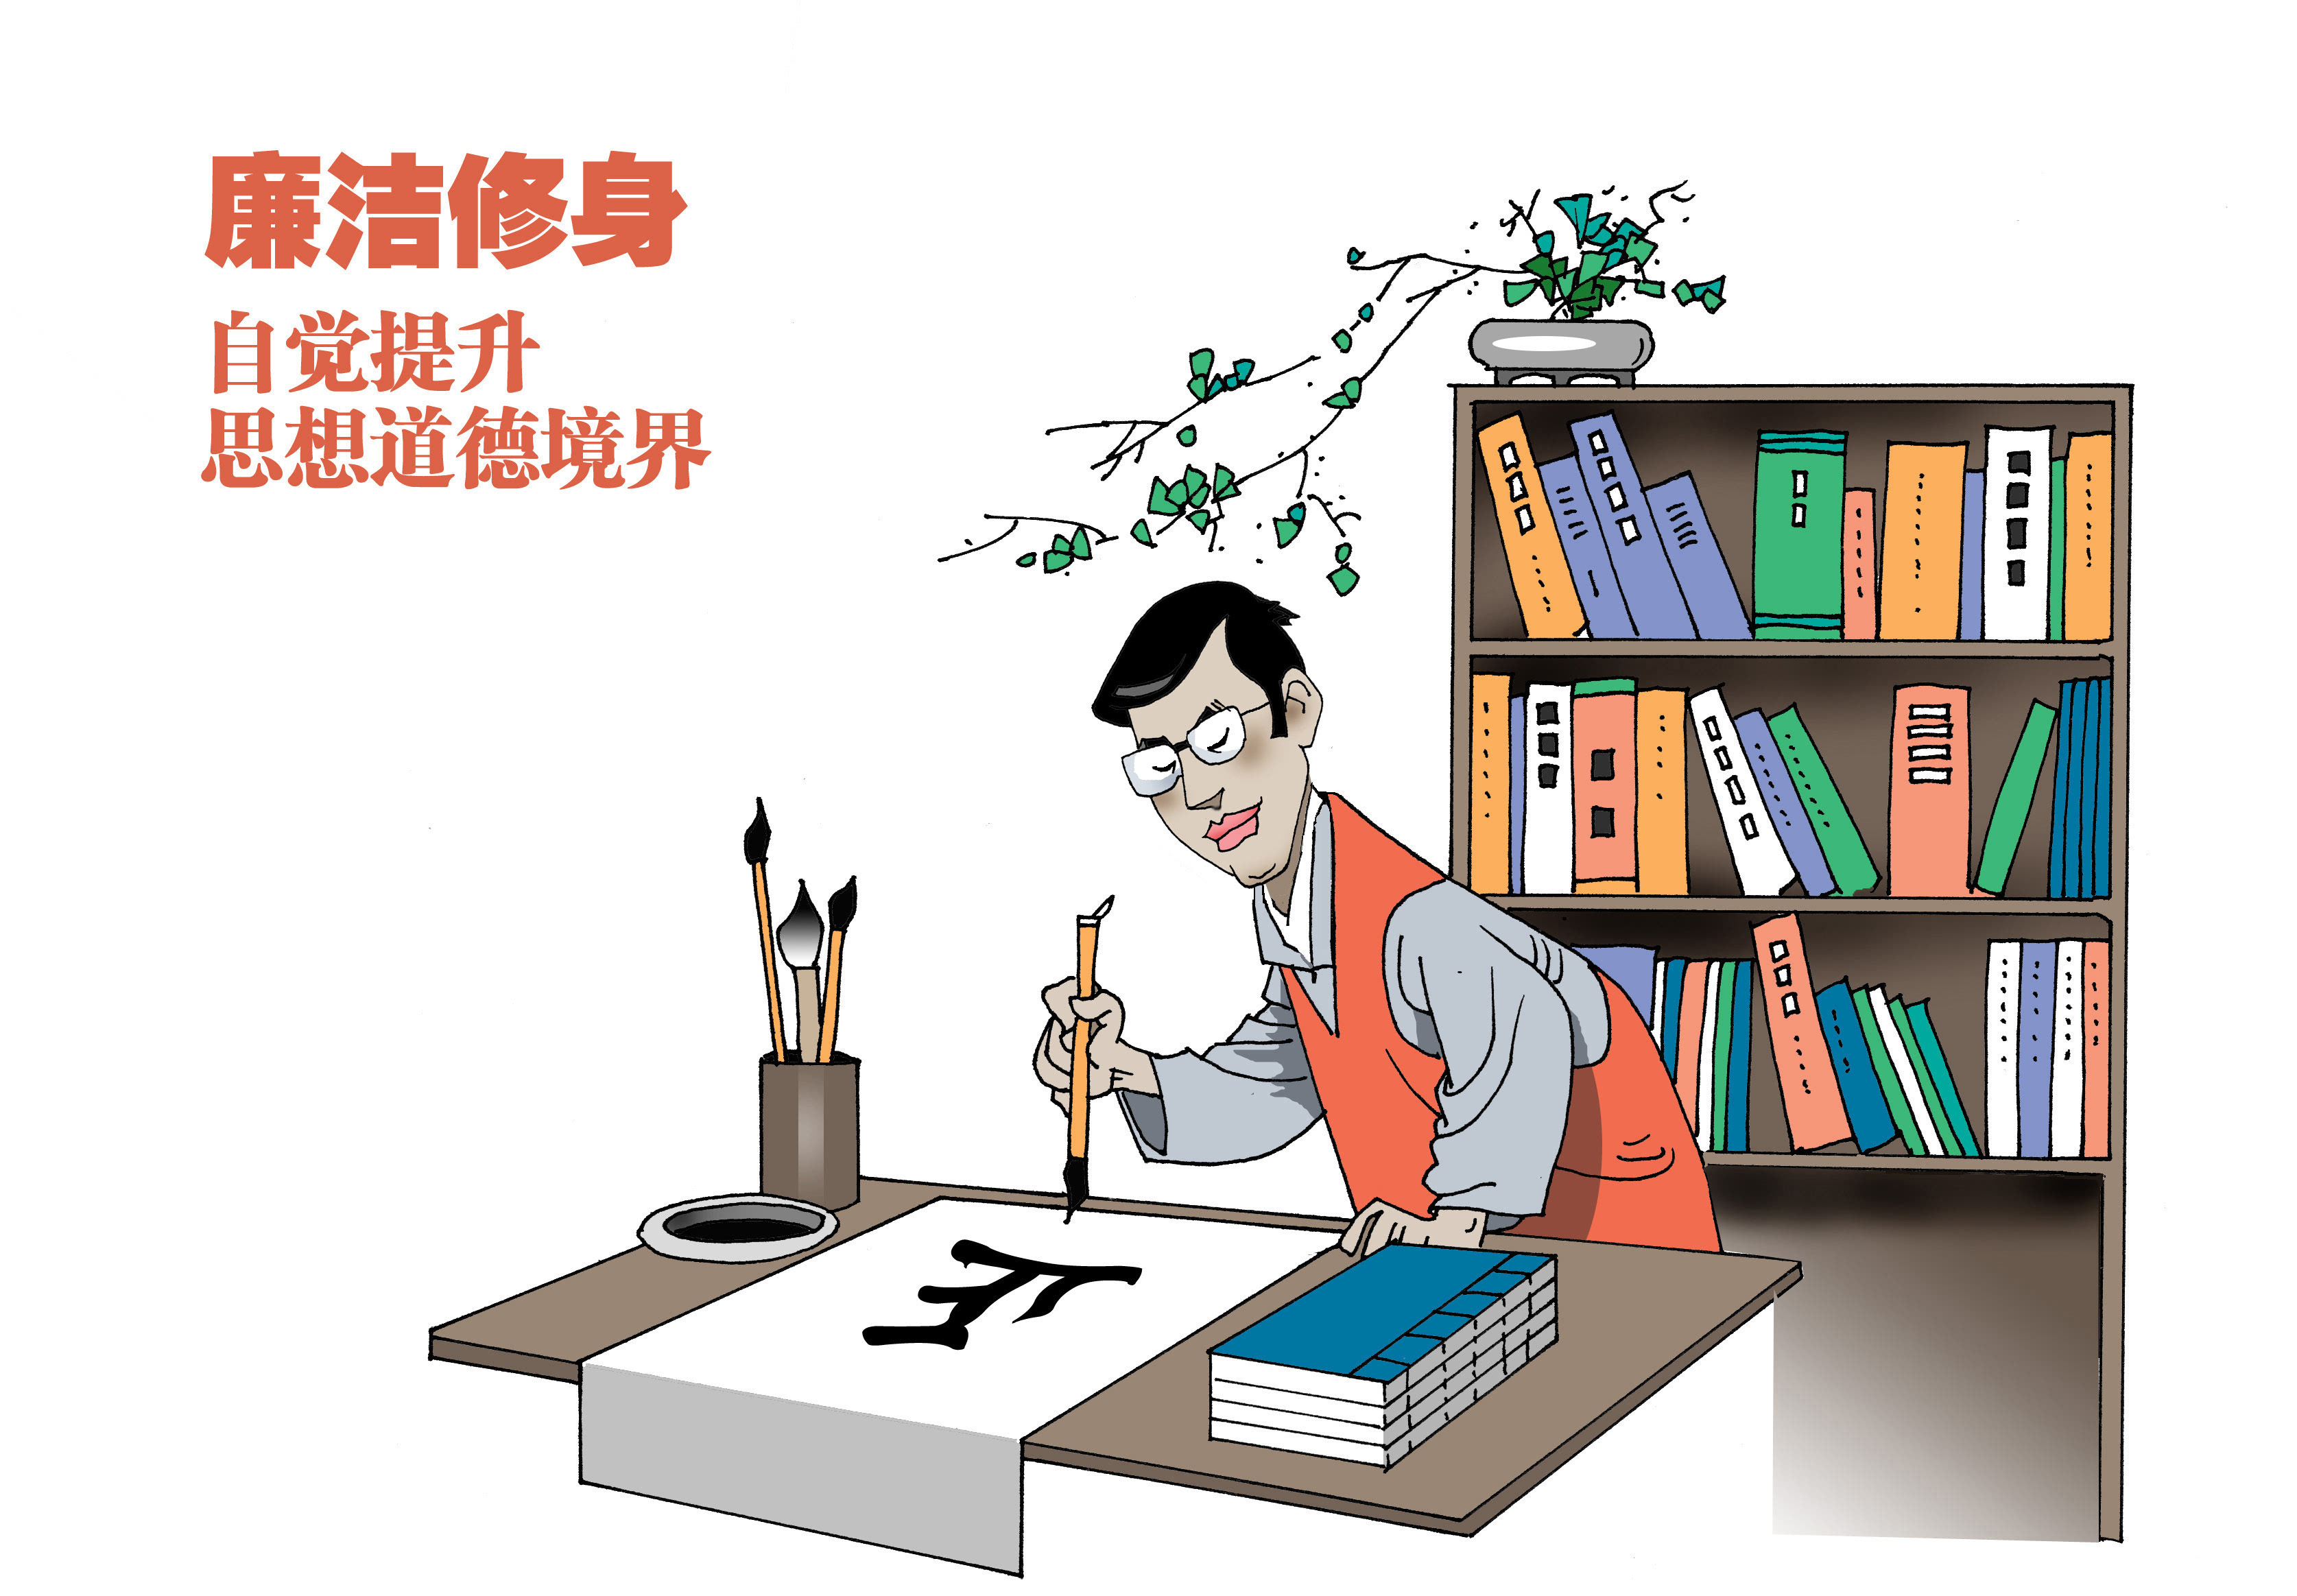 深圳推出漫画图解 诠释《中国共产党廉洁自律